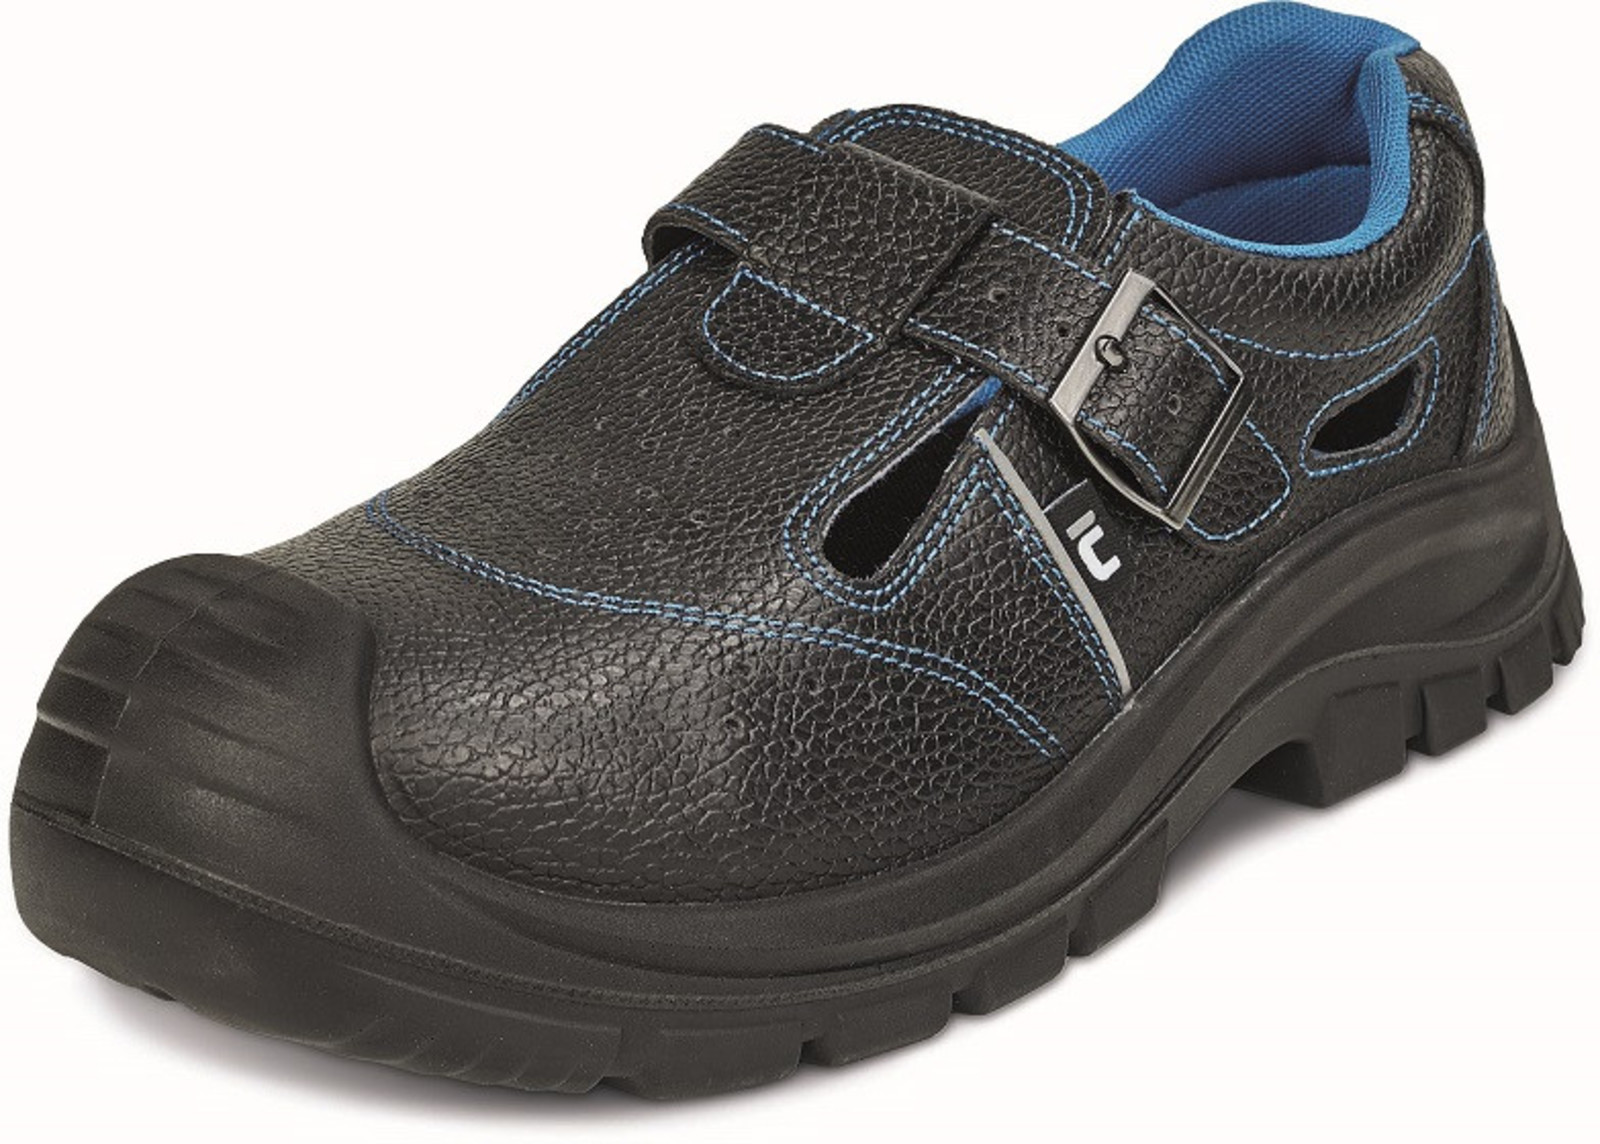 Bezpečnostné sandále Raven XT S1P - veľkosť: 39, farba: čierna